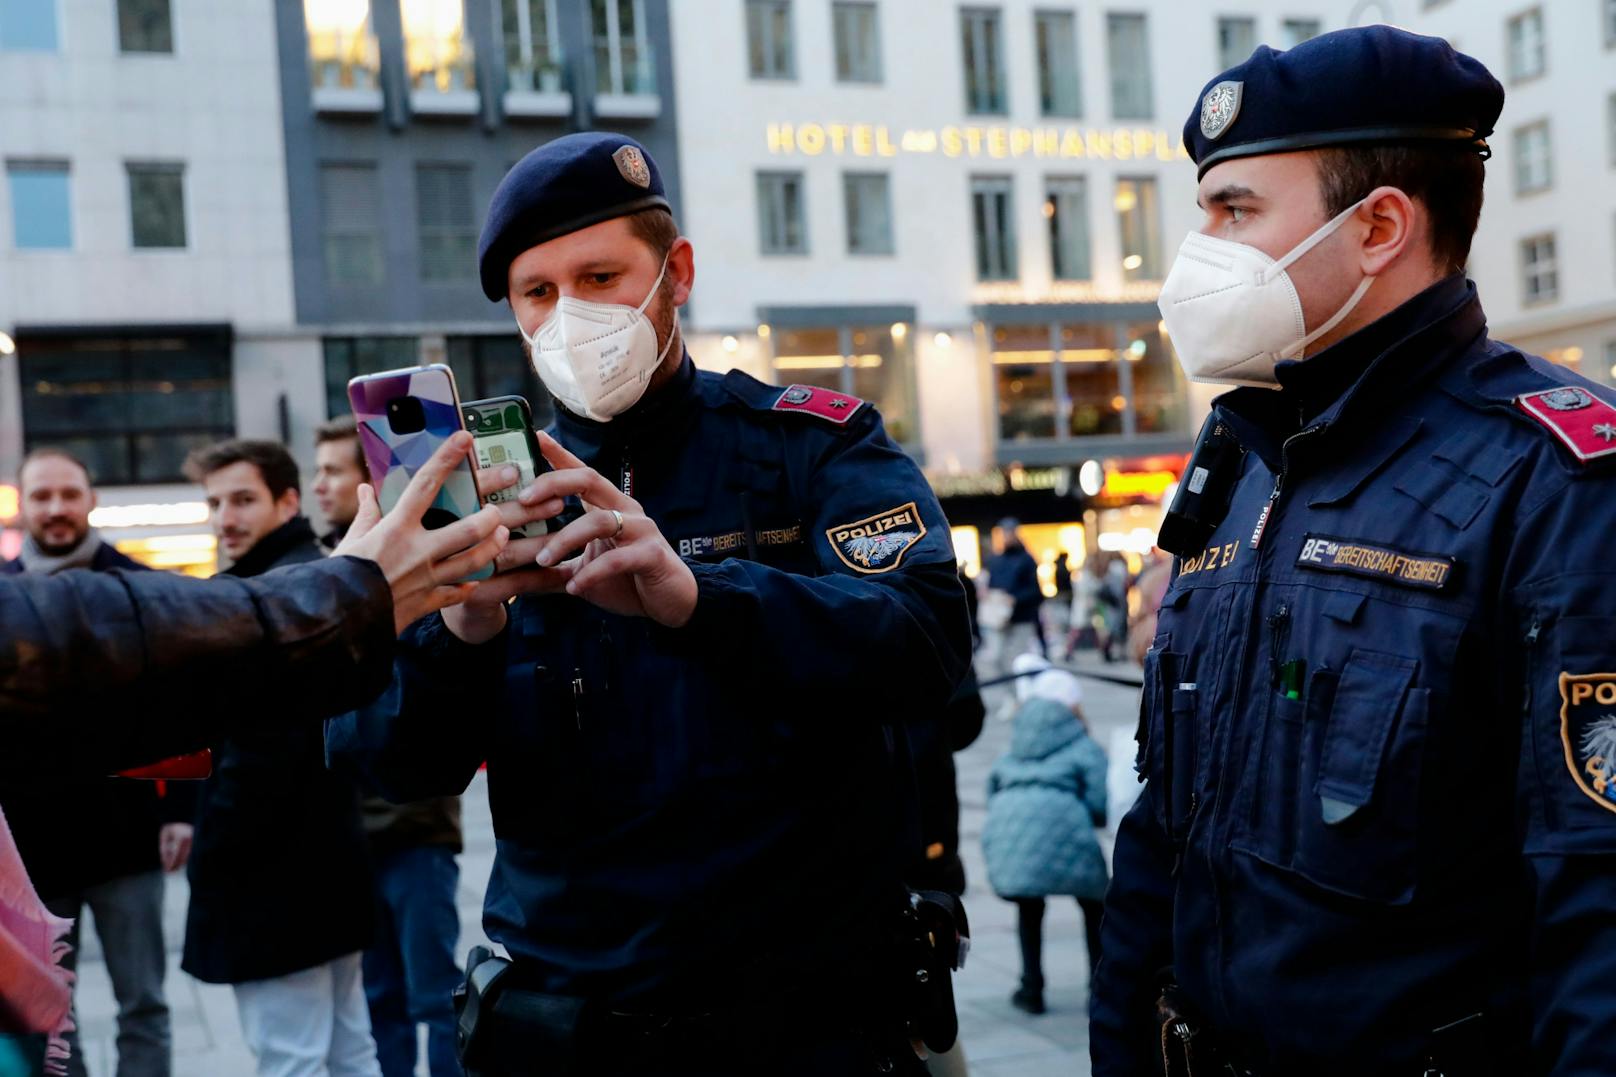 Polizei kontrolliert den Impf-Status in der Wiener City. (Archivfoto)